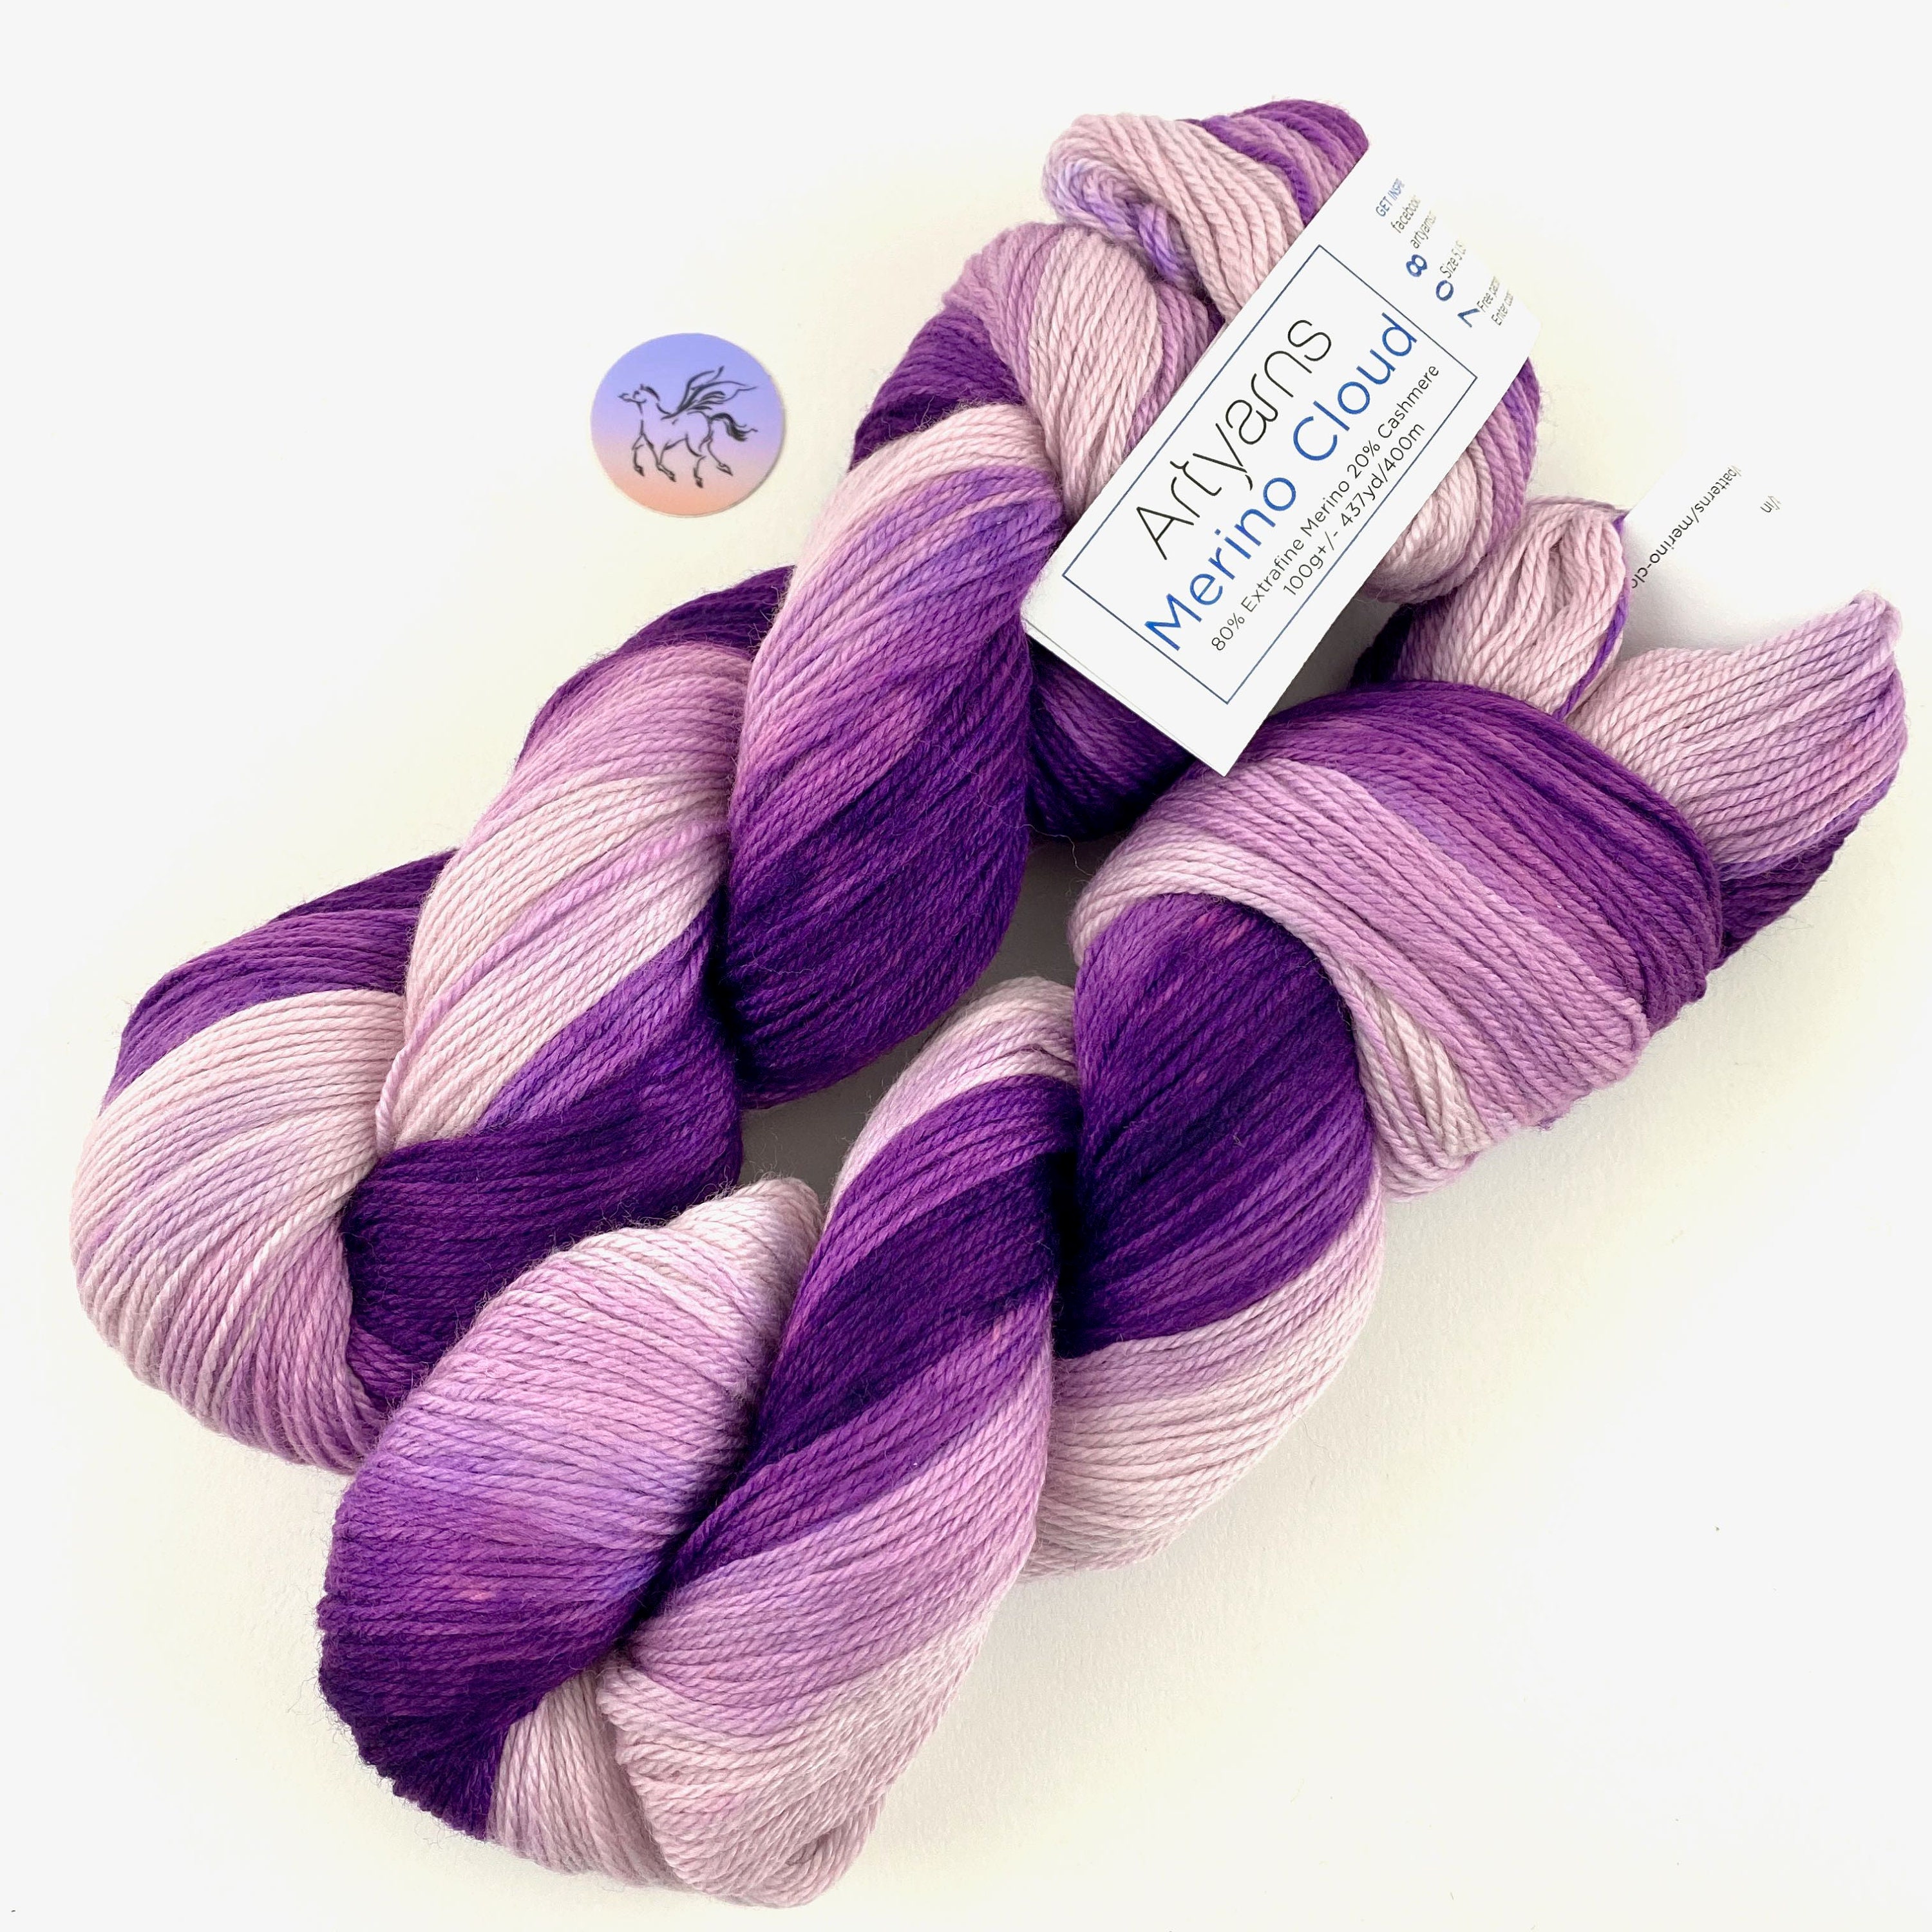 Artyarns Merino Cloud Ombre Yarn in 708 Purple Gradient Ombre at Fabulous  Yarn